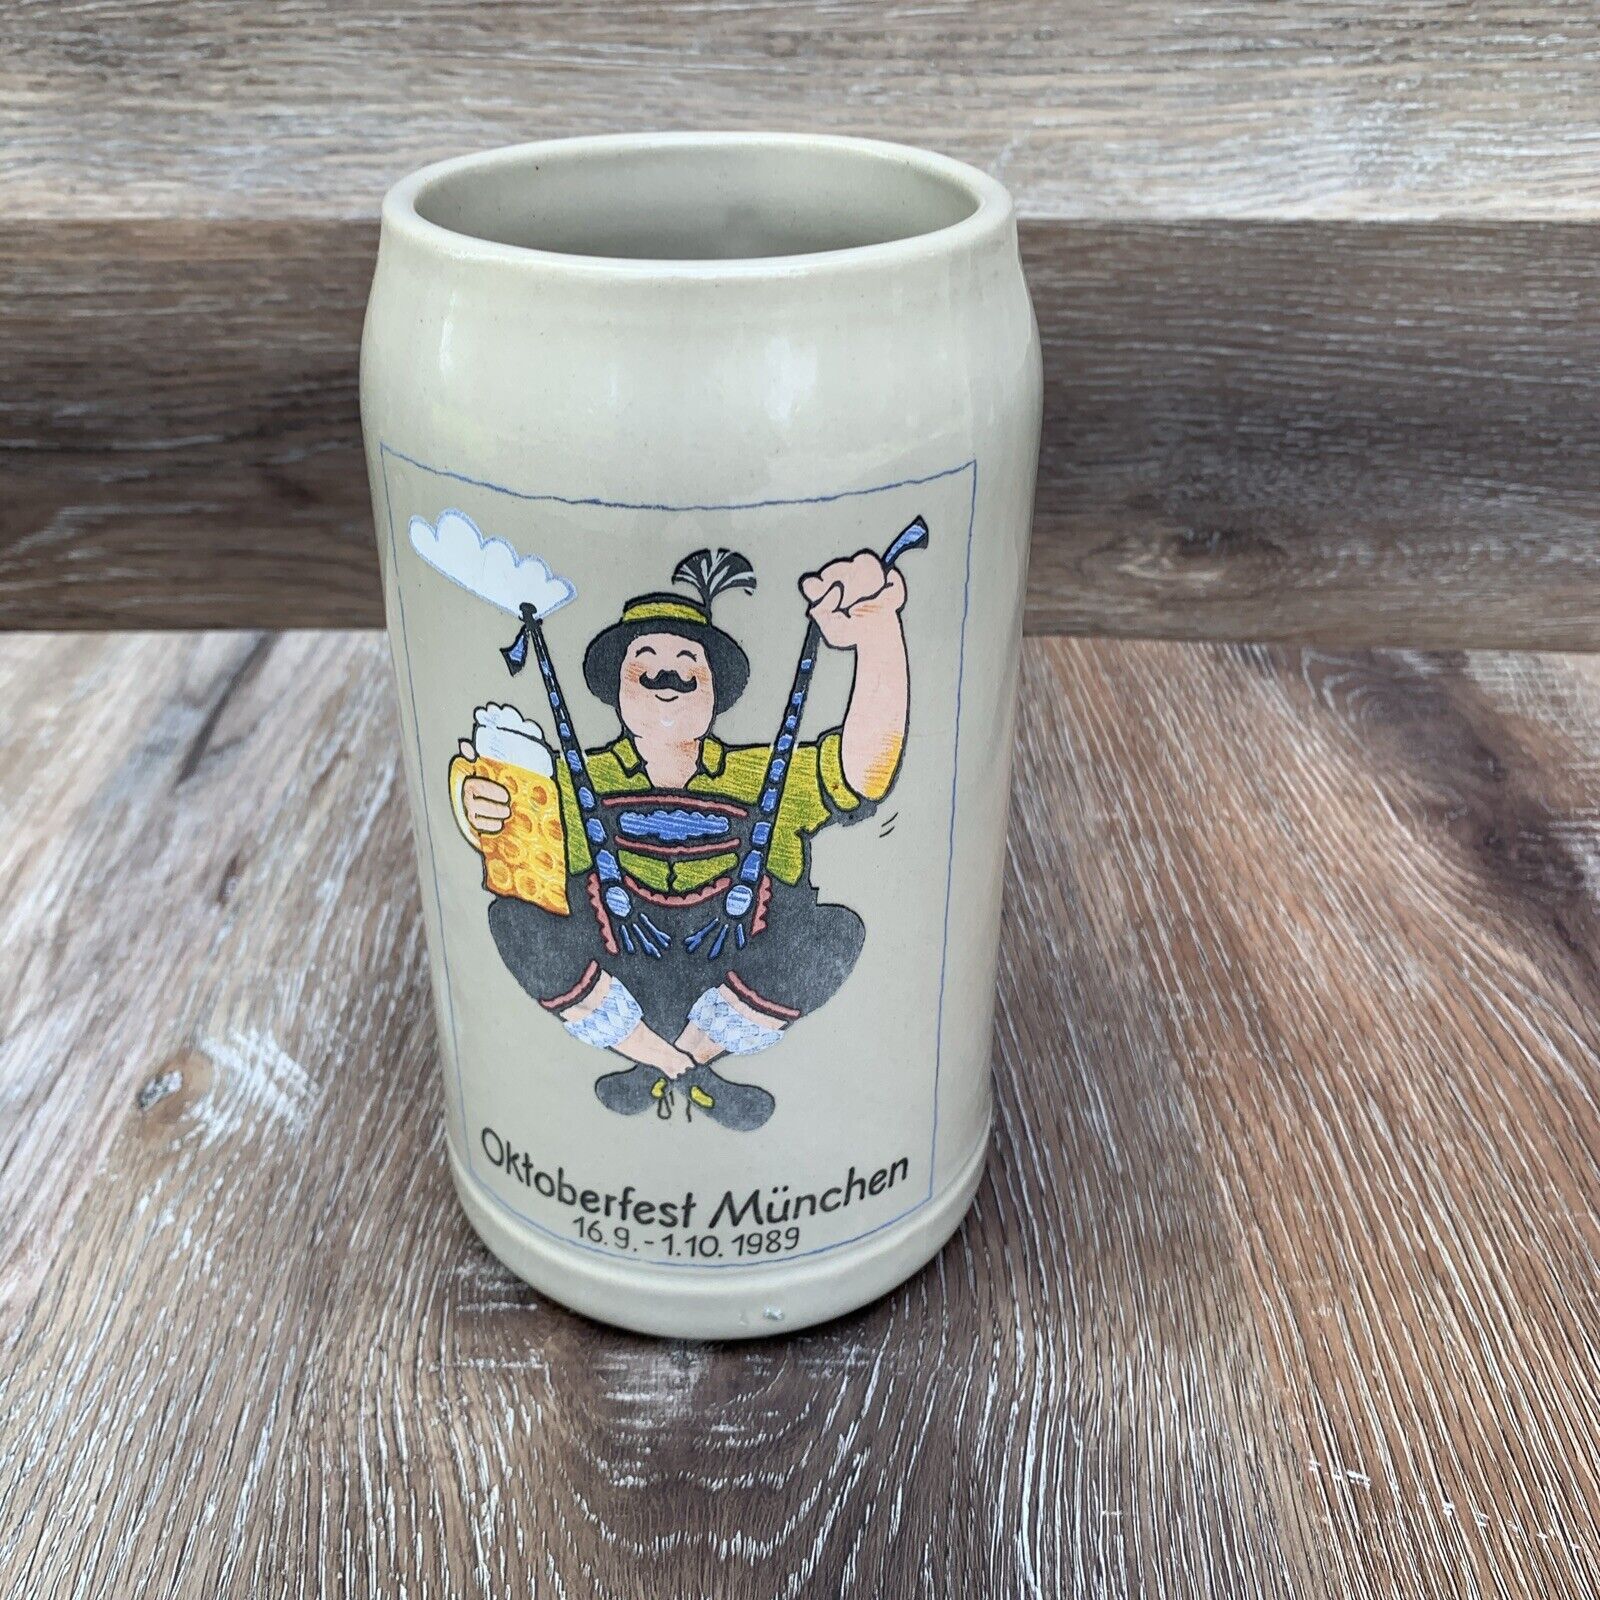 Official 1989 Oktoberfest Munich - German / Bavarian Beer Stein 1 Liter